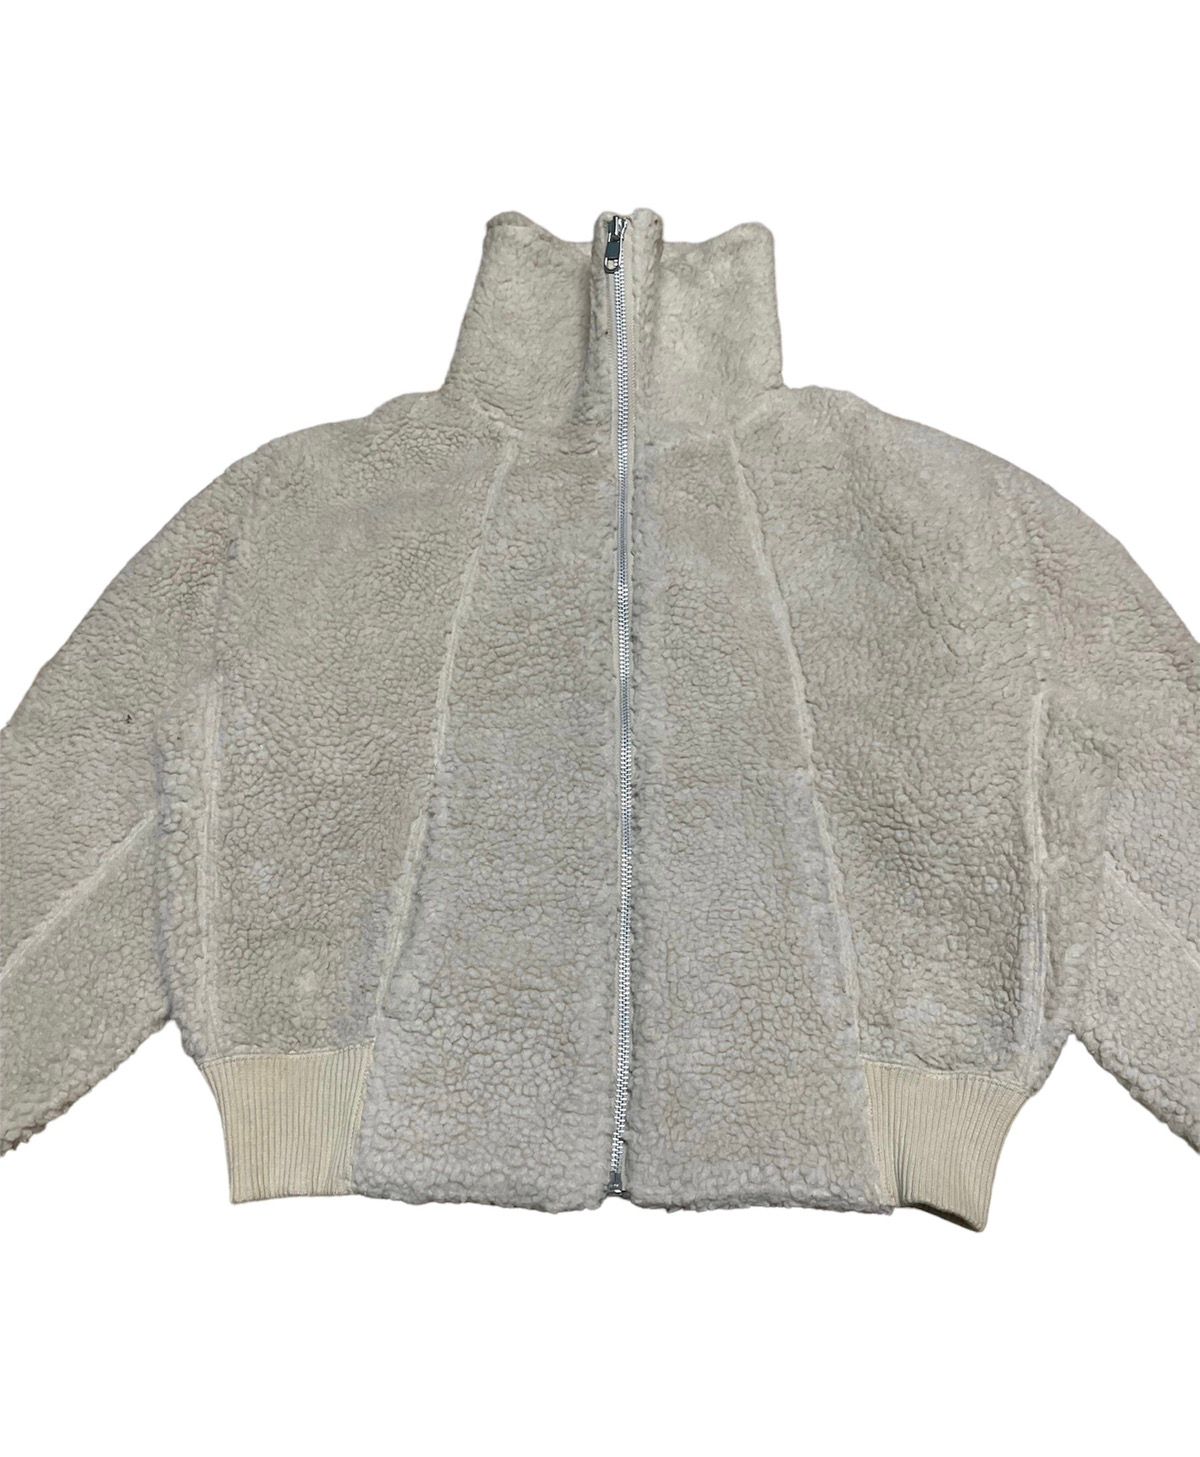 🔥NEED GONE🔥 Uniqlo Undercover Fleece Jacket - 6